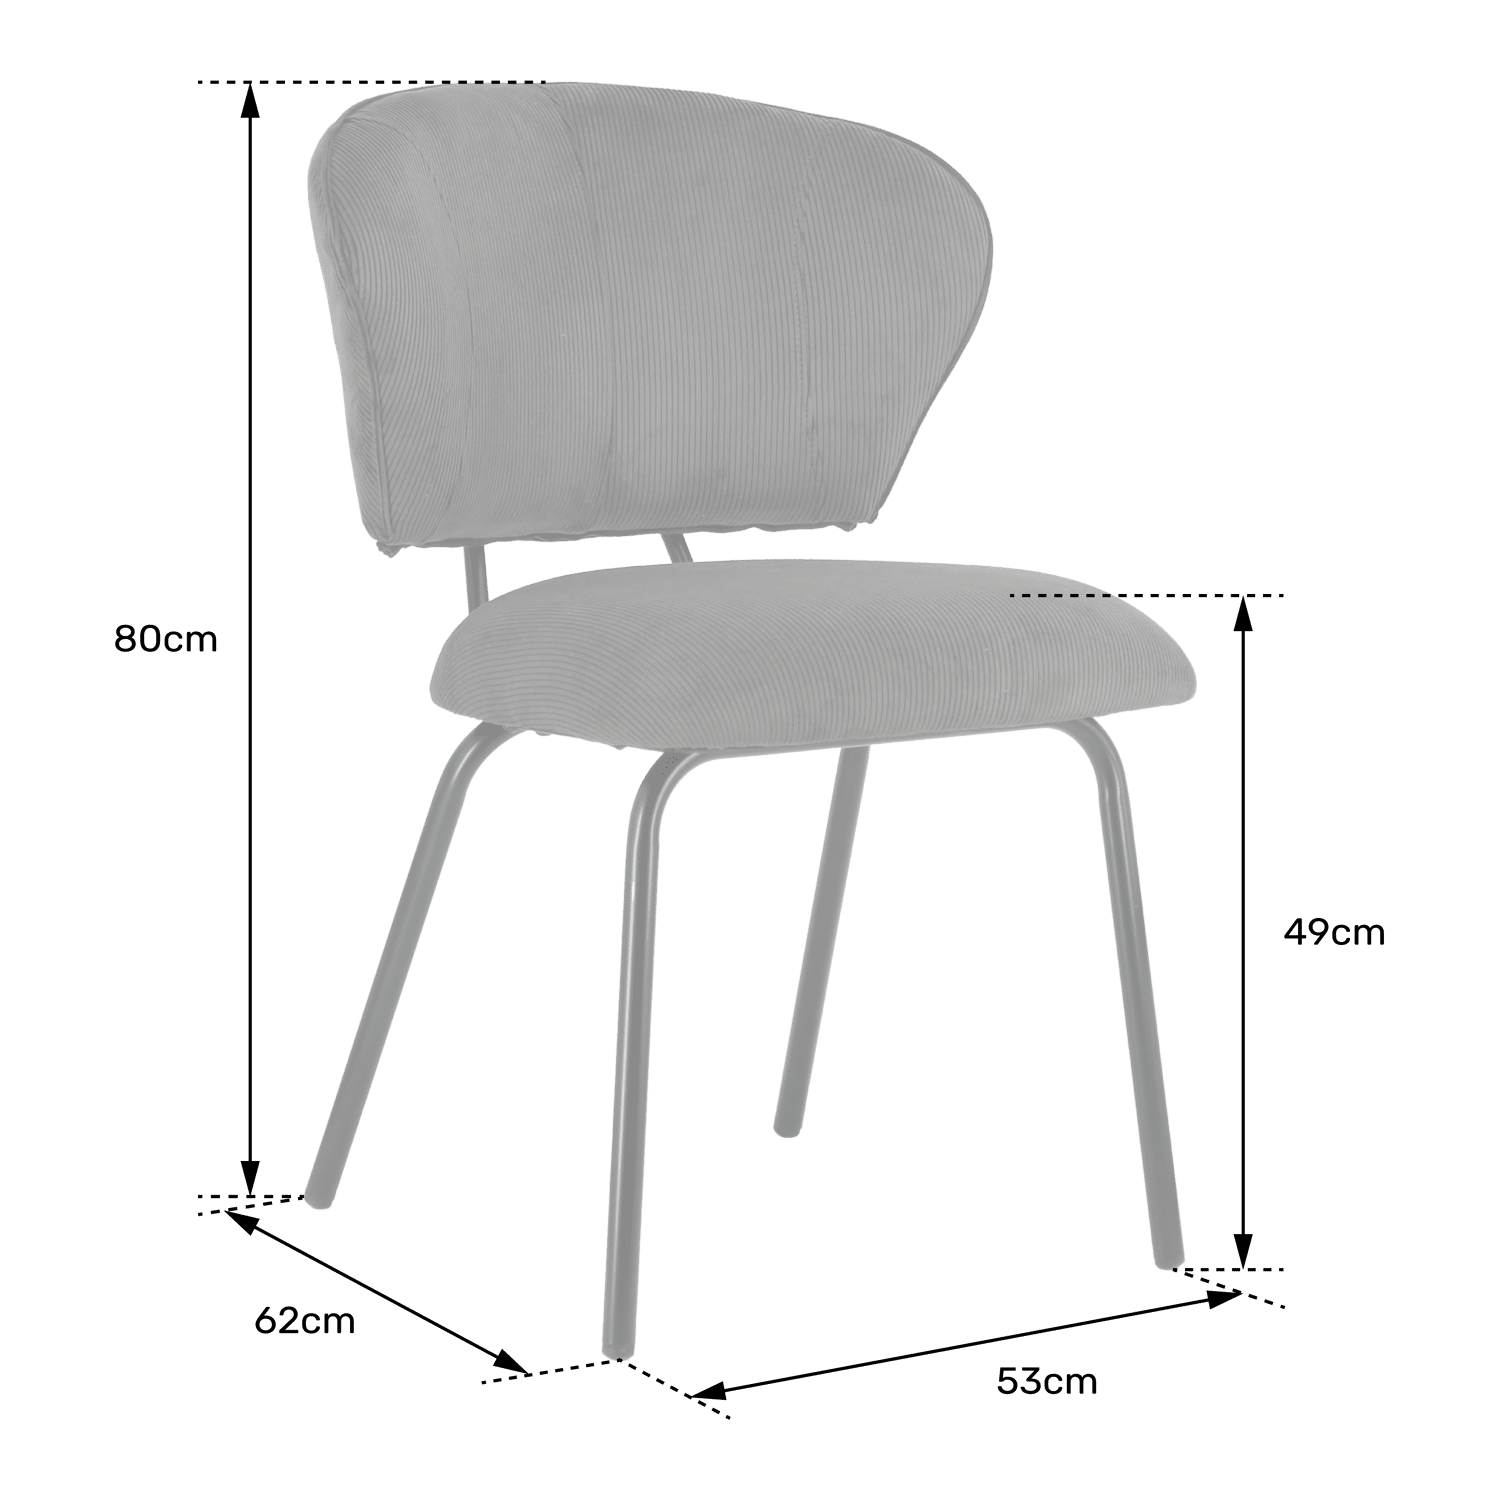 Satz von 2 grünen Cord-Stühlen NILSA